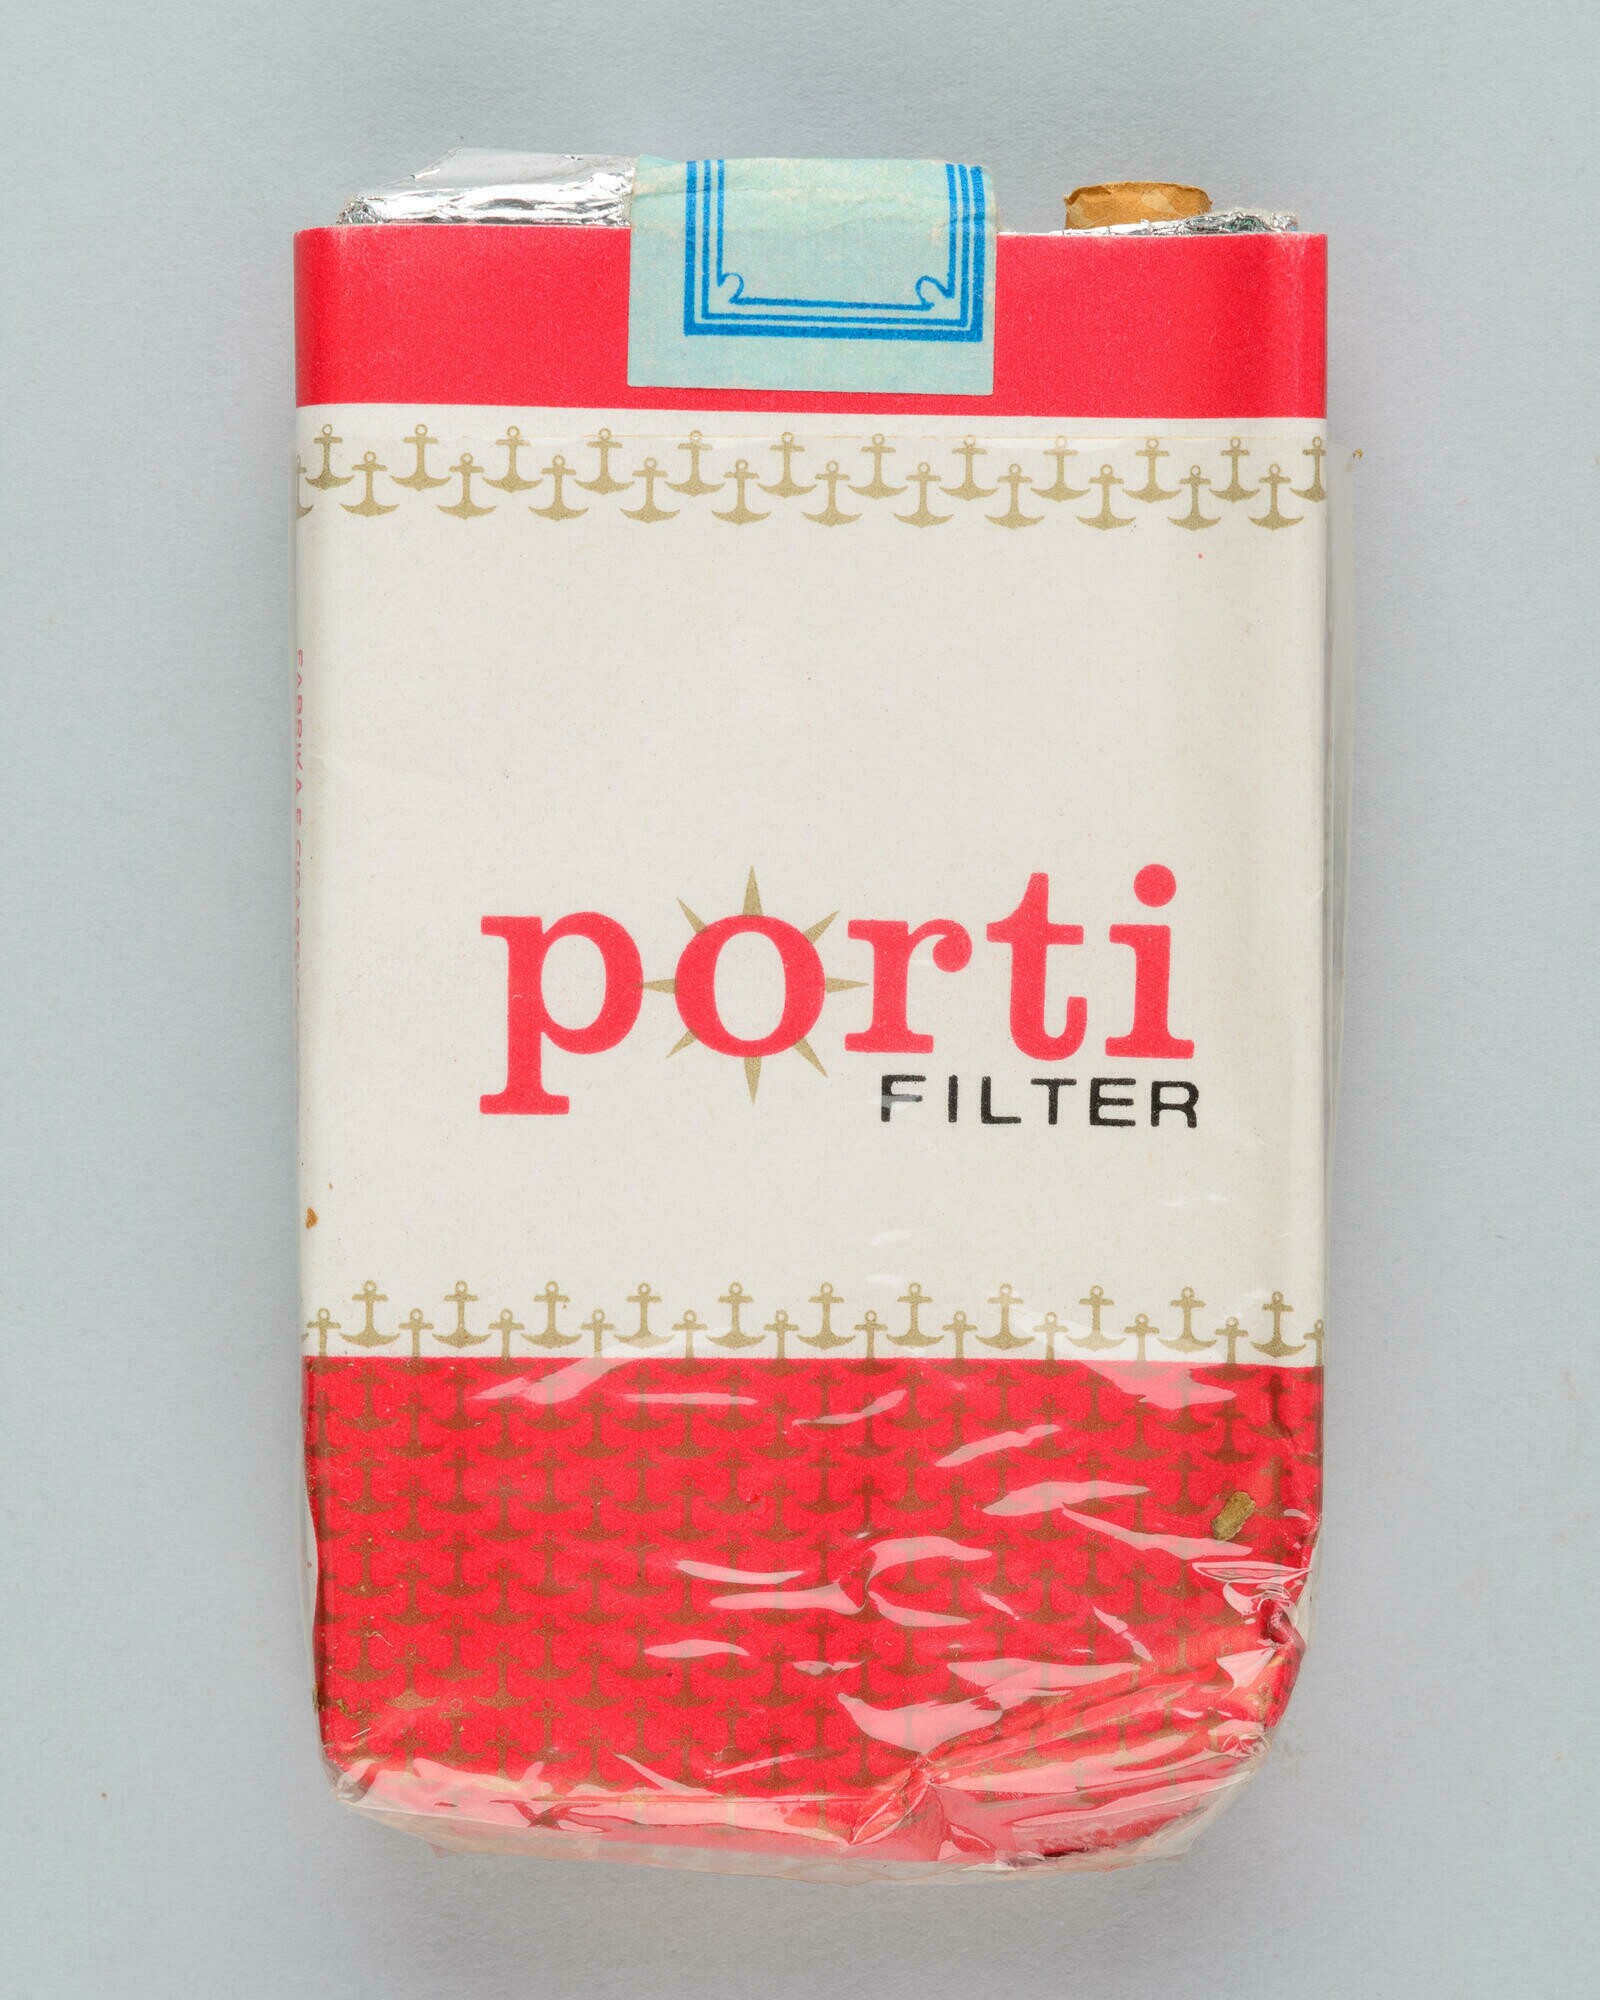 Zigarettenschachtel der Marke "Porti Filter" (Stadtmuseum Dresden CC BY-NC-ND)